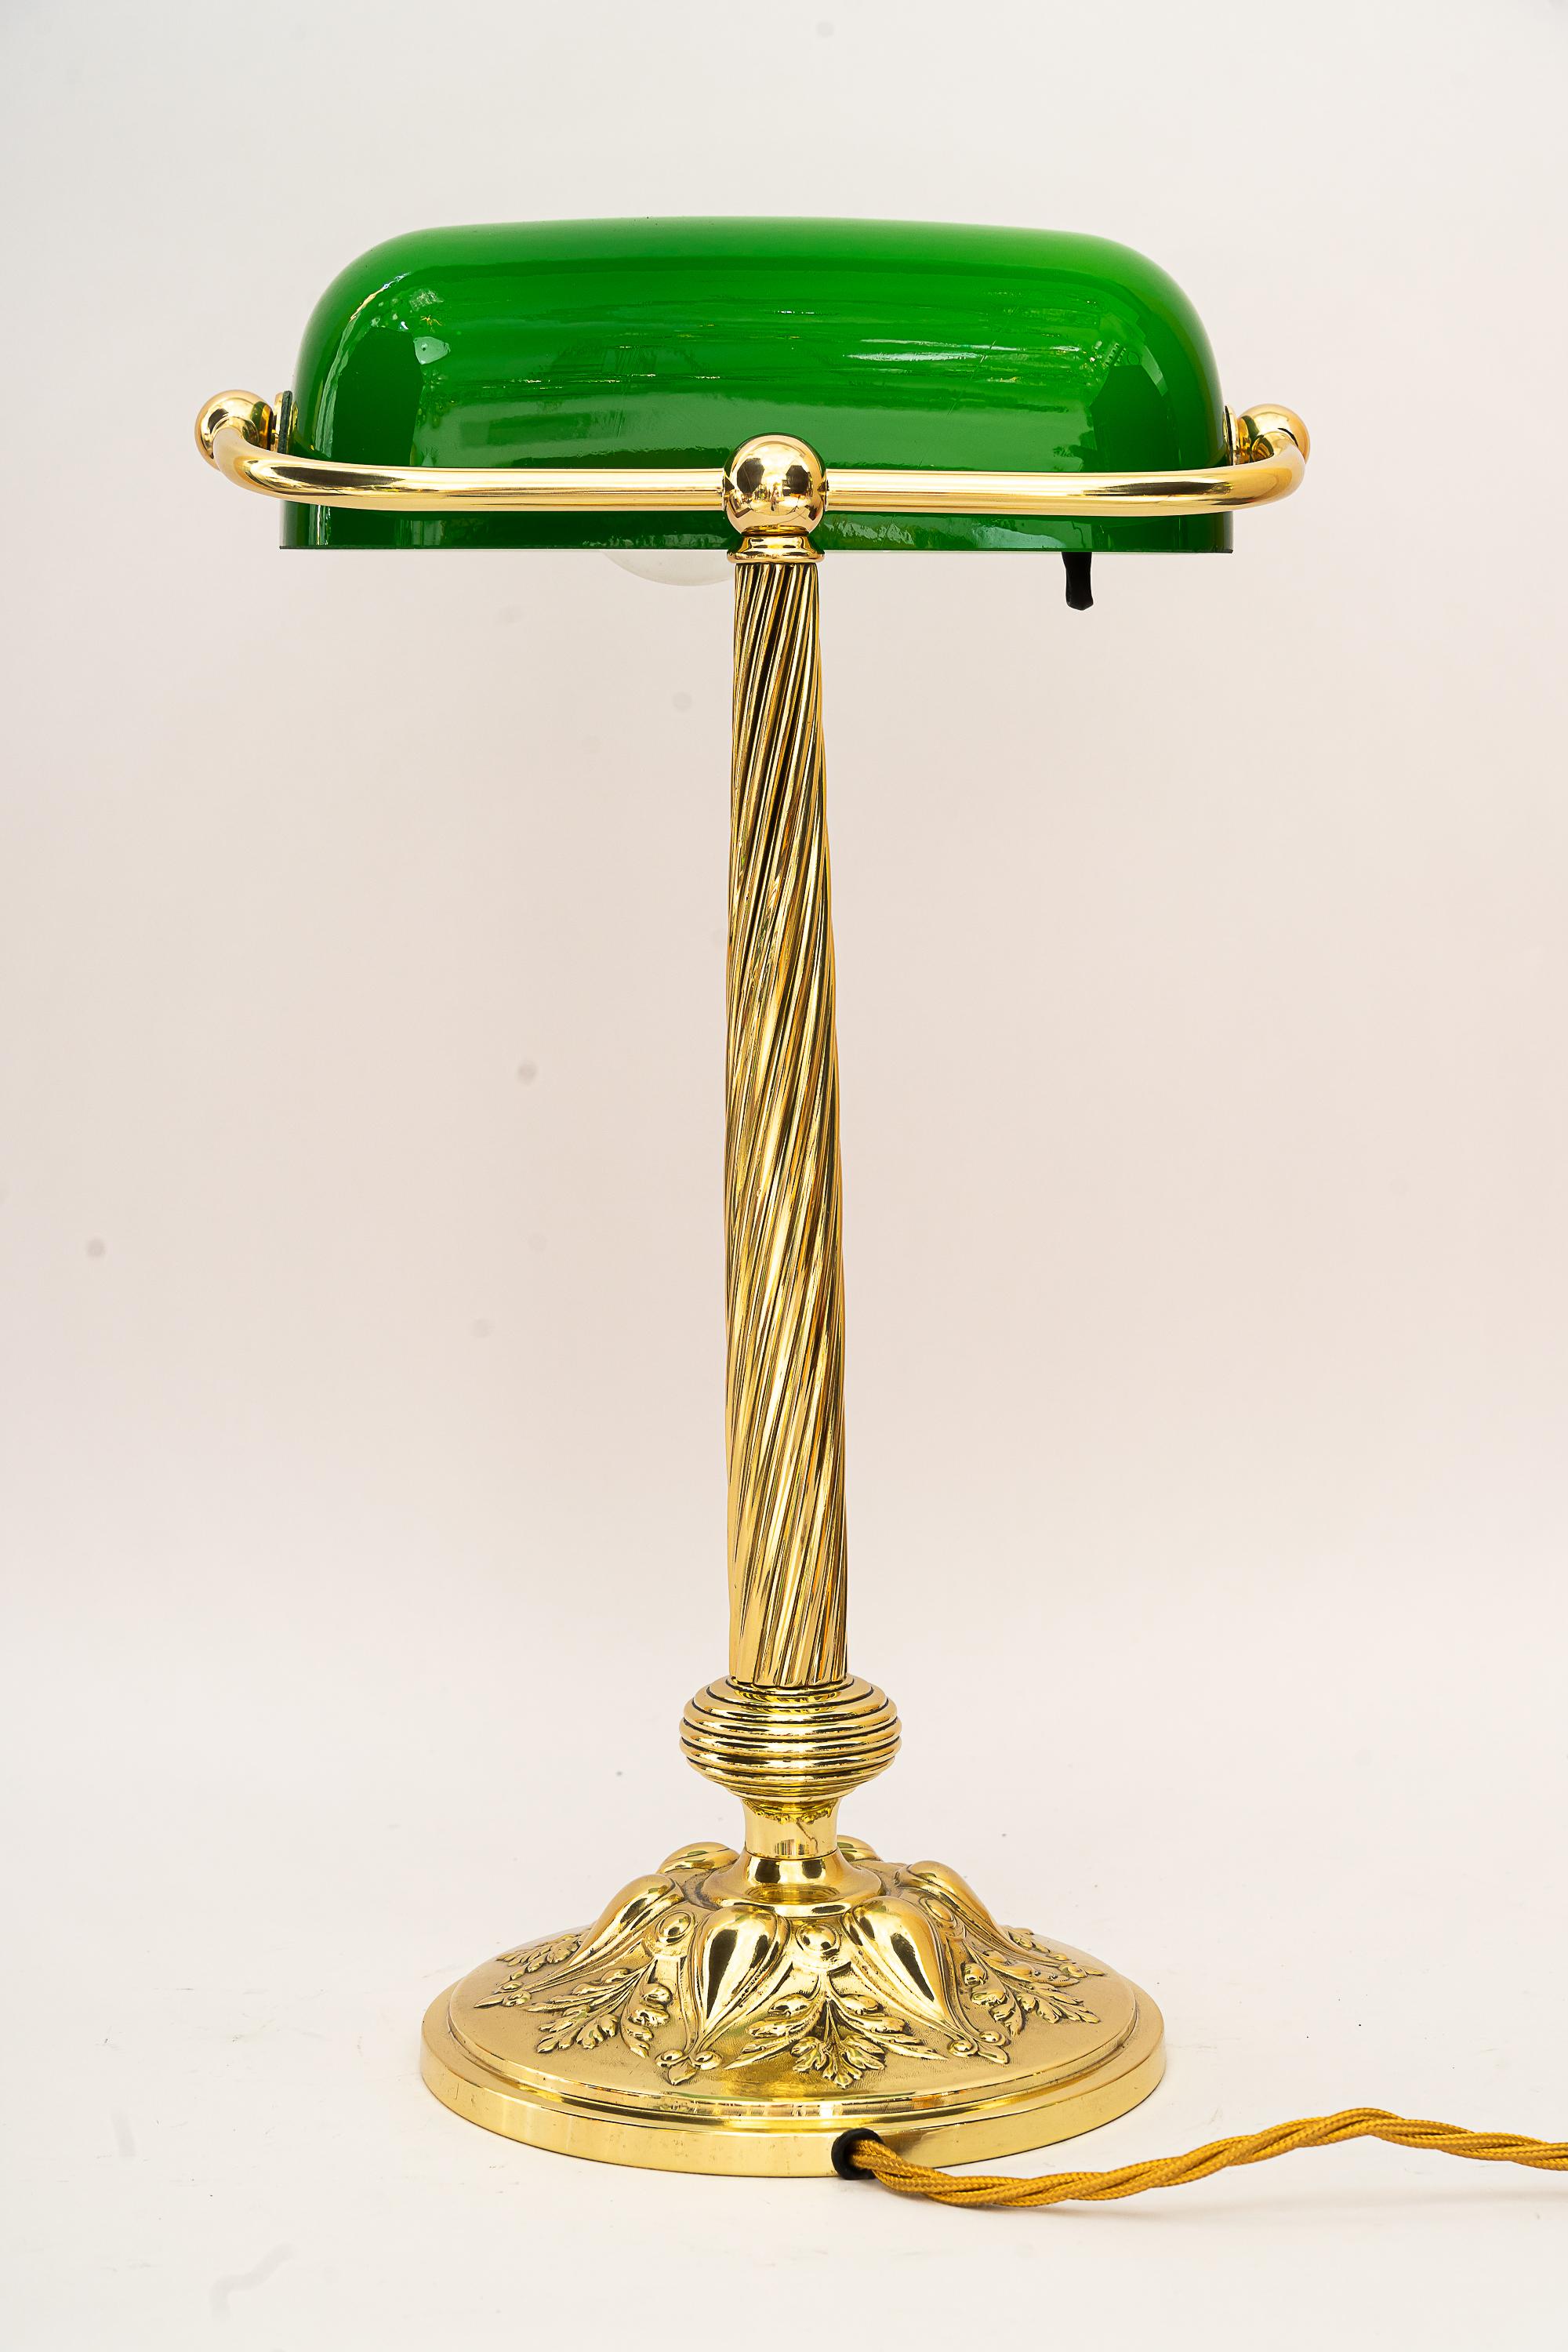 Verstellbare Banker-Lampe um 1920
Messing poliert und emailliert